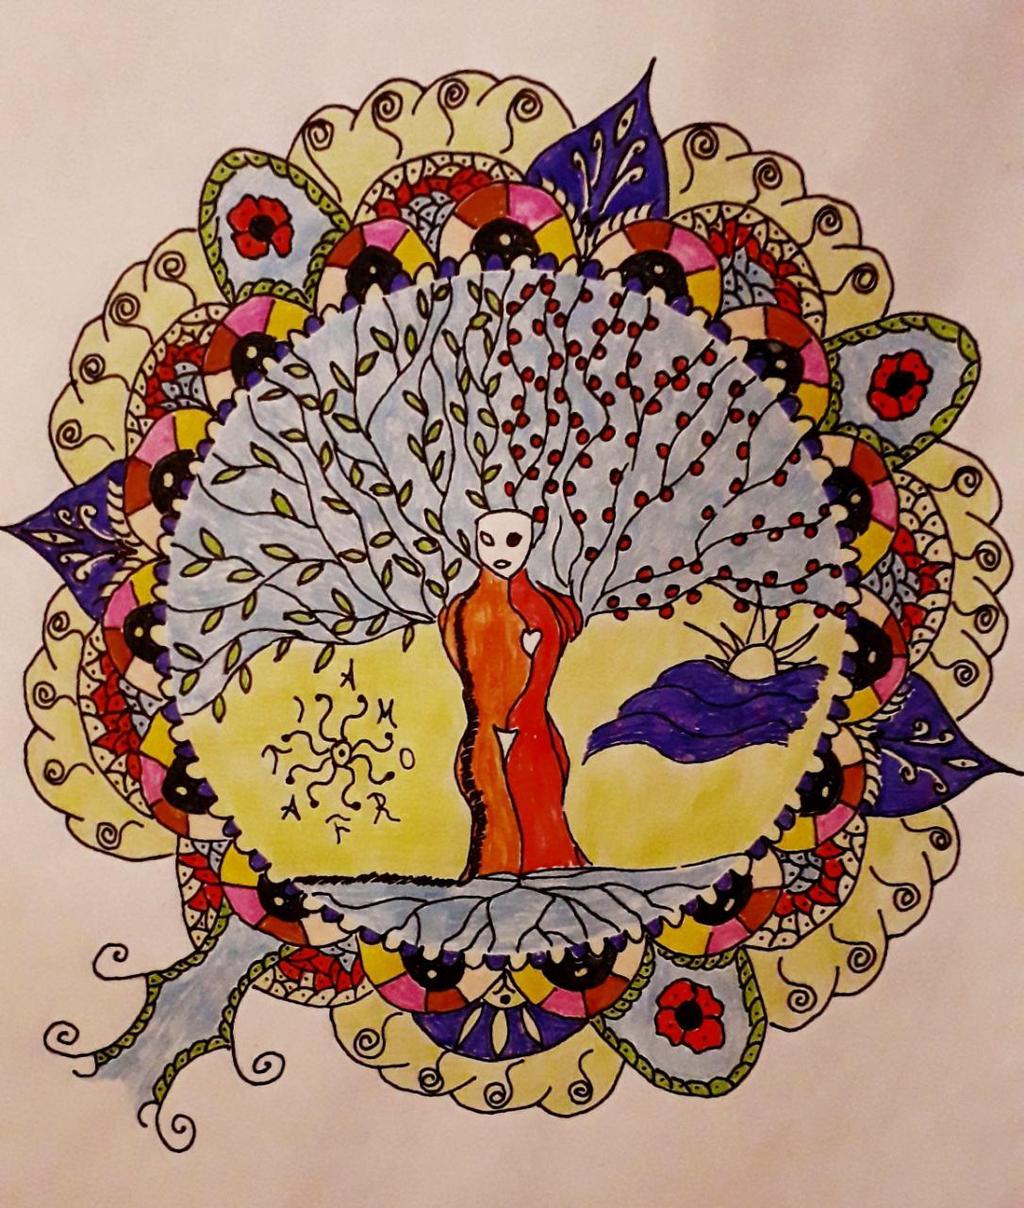 4.5. Prikaz i interpretacija mandale Bilješke ispitanika o značenjima unutar mandale: Mandala opisuje Mitriha, figuru koja je u suštini androgin, spoj muškog i ţenskog principa, posjeduje tijelo ţene